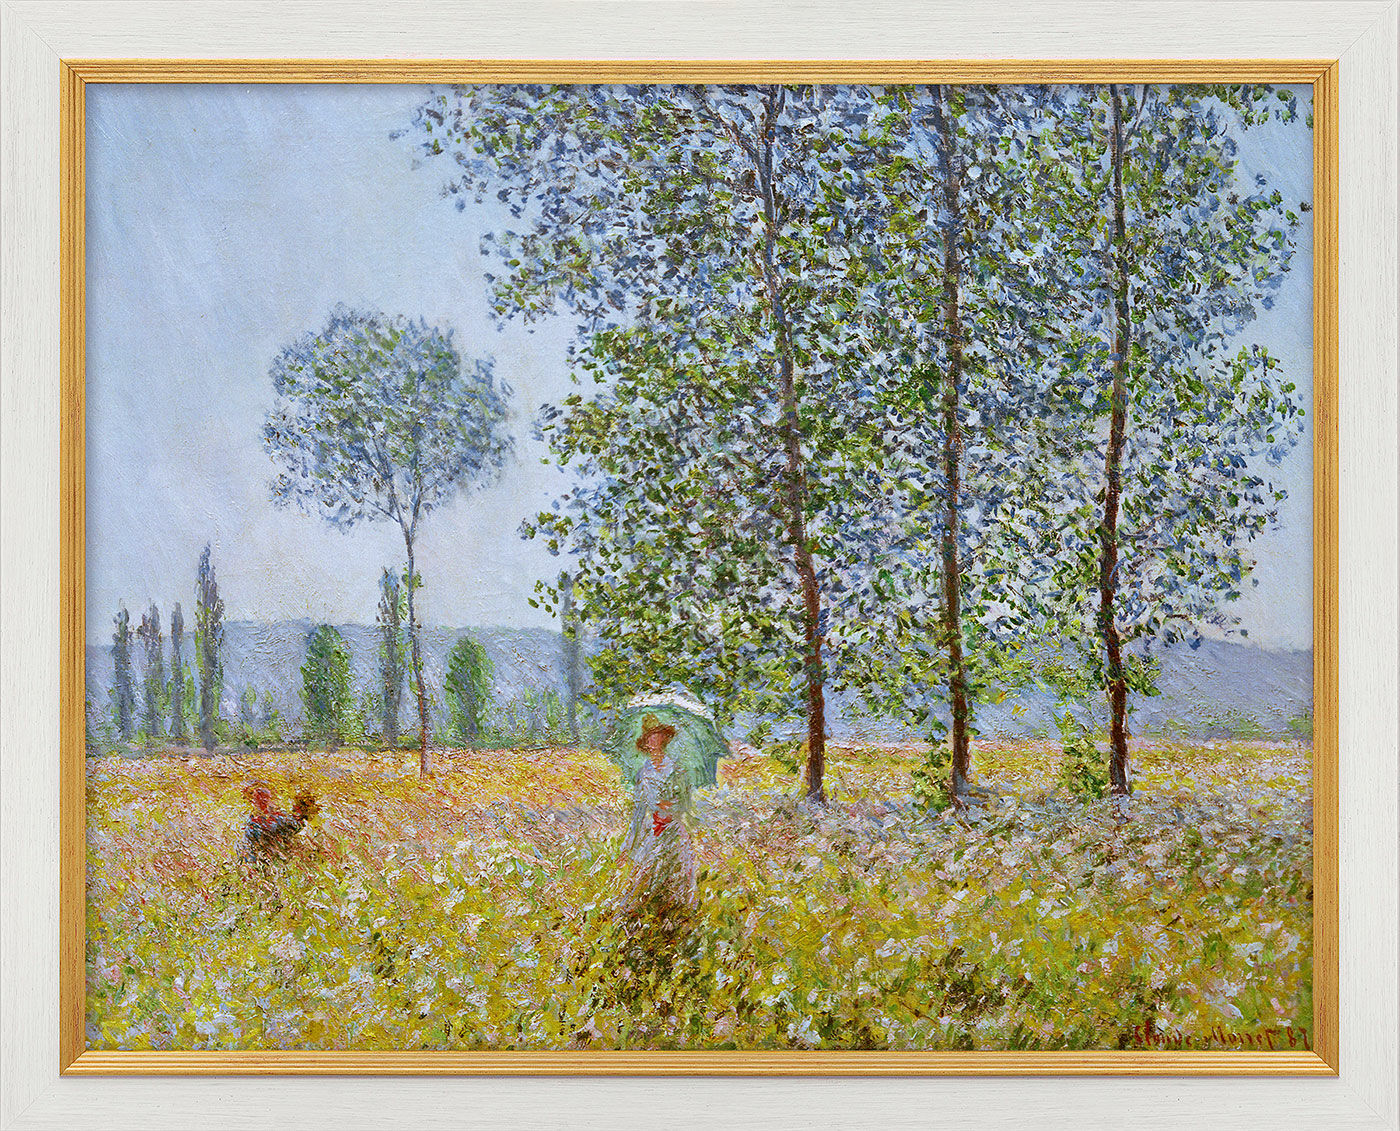 Beeld "Lentevelden" (1887), ingelijst von Claude Monet